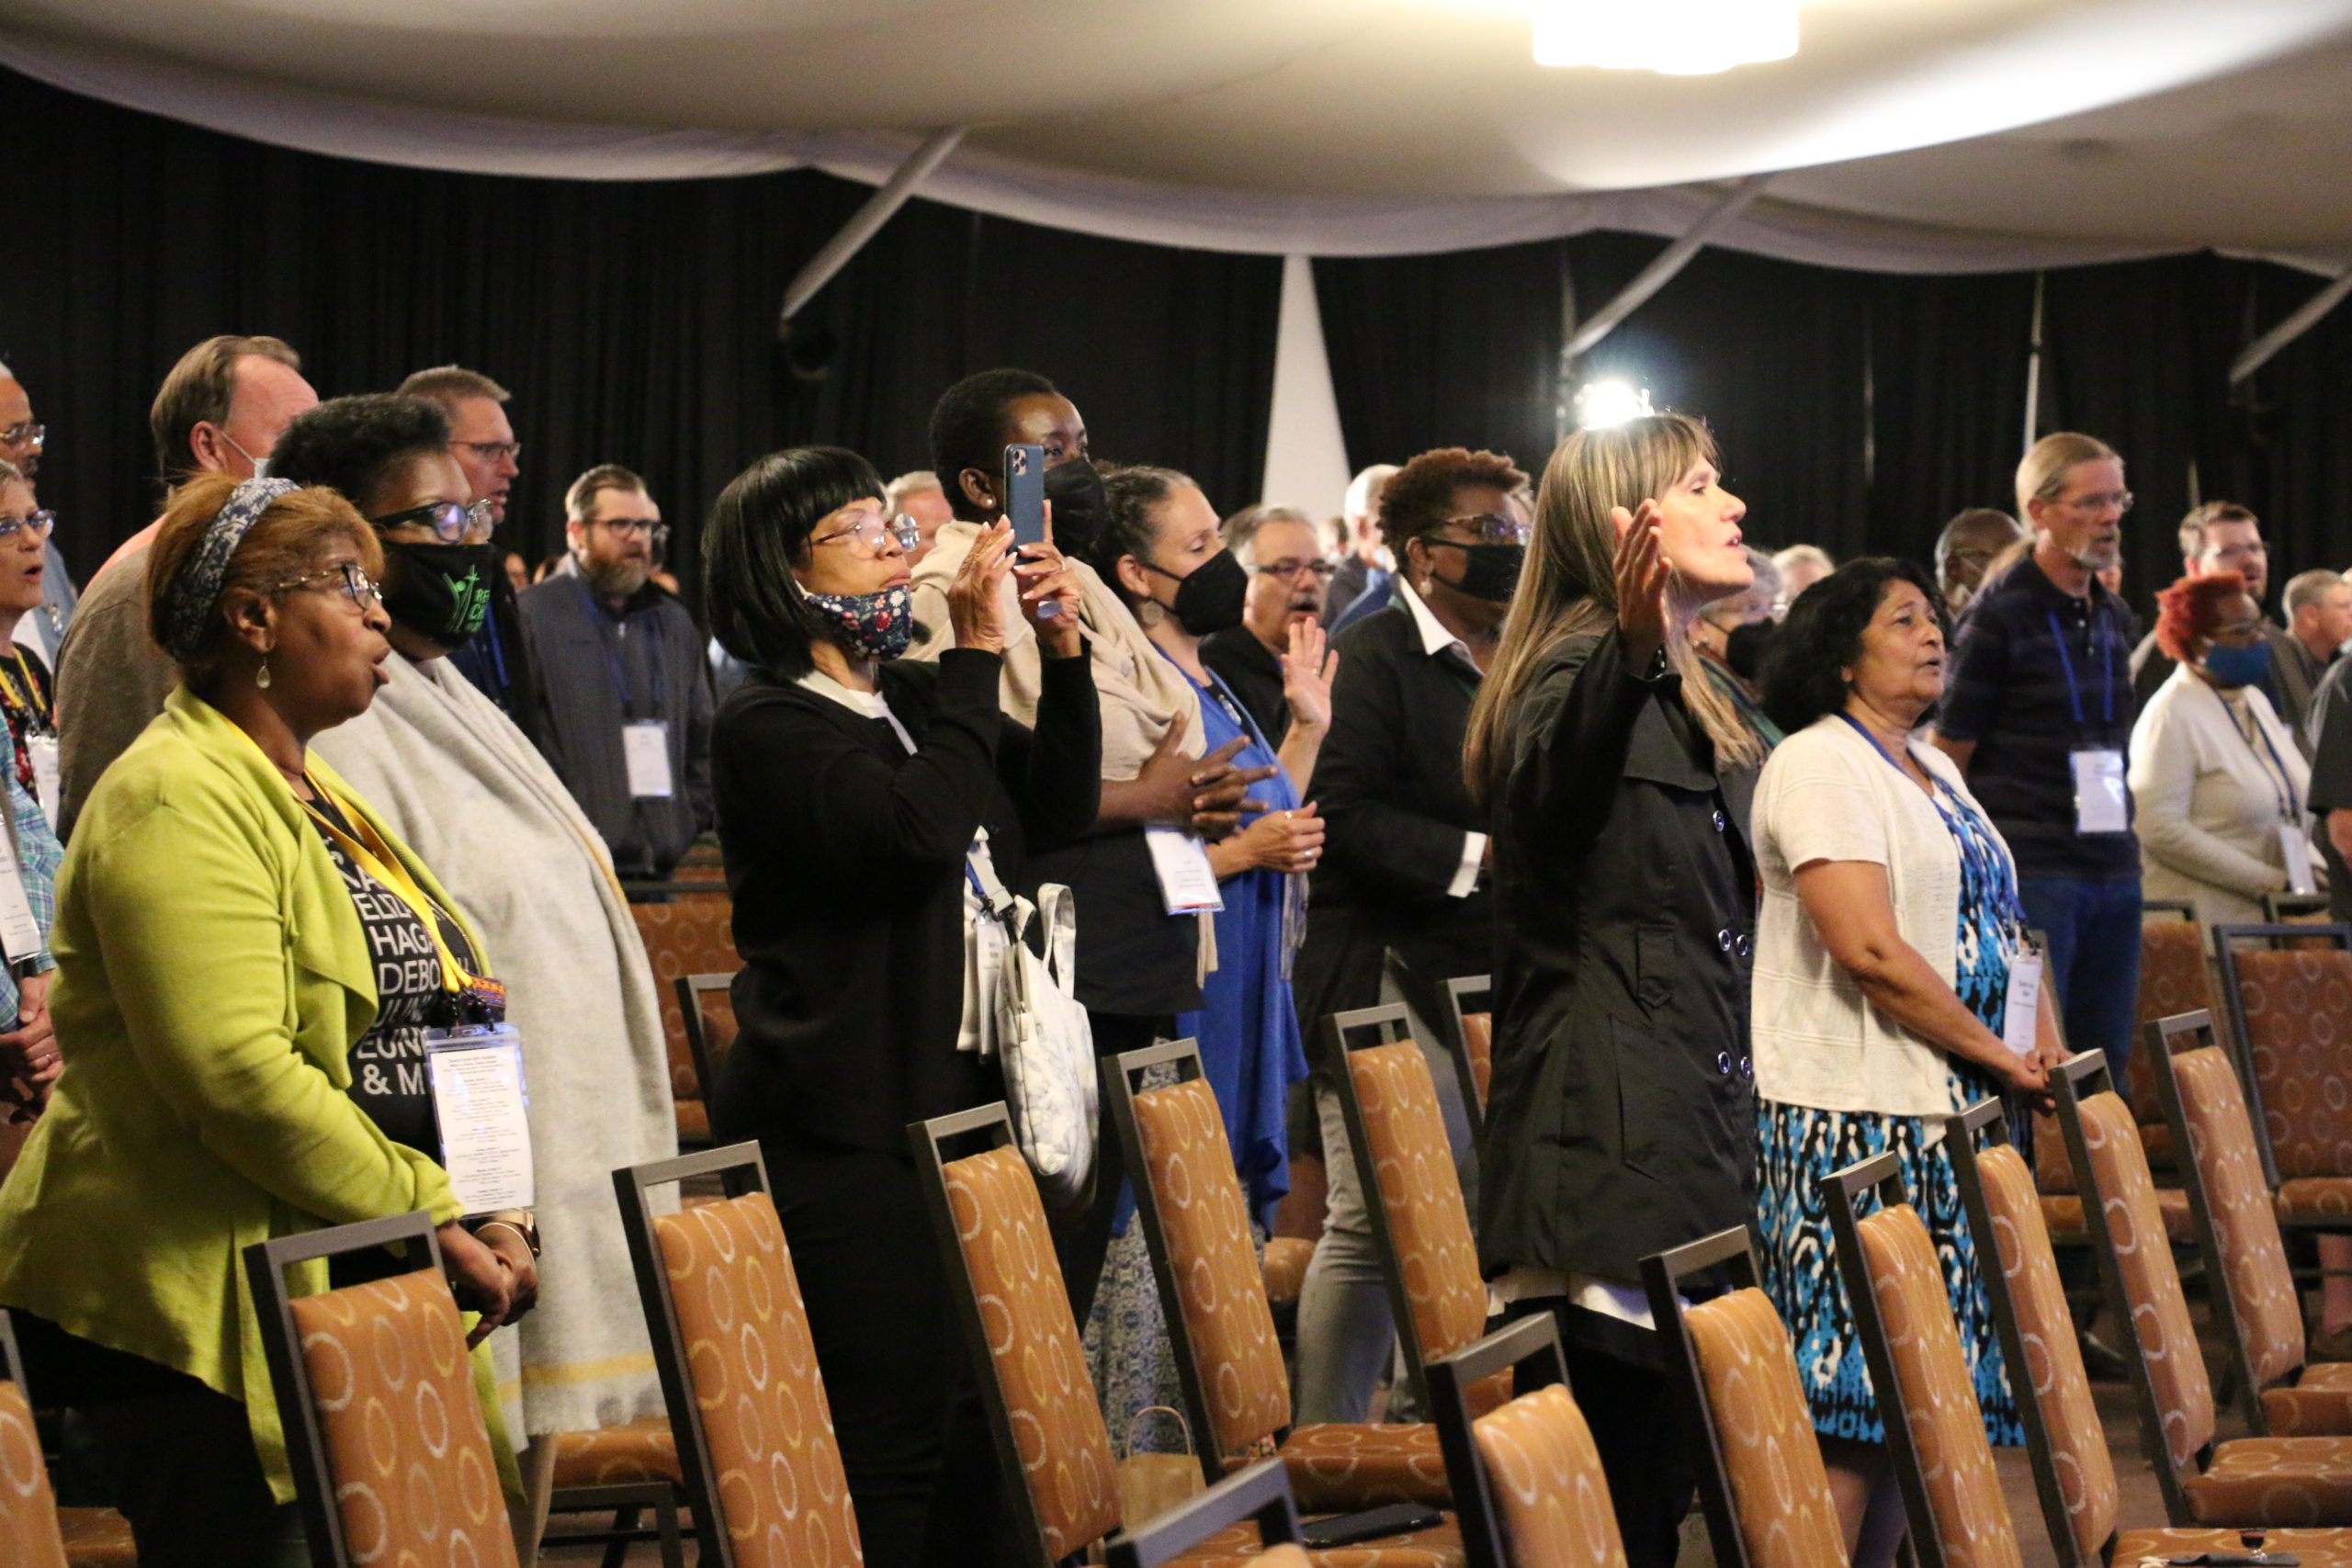 Delegates praising God during worship